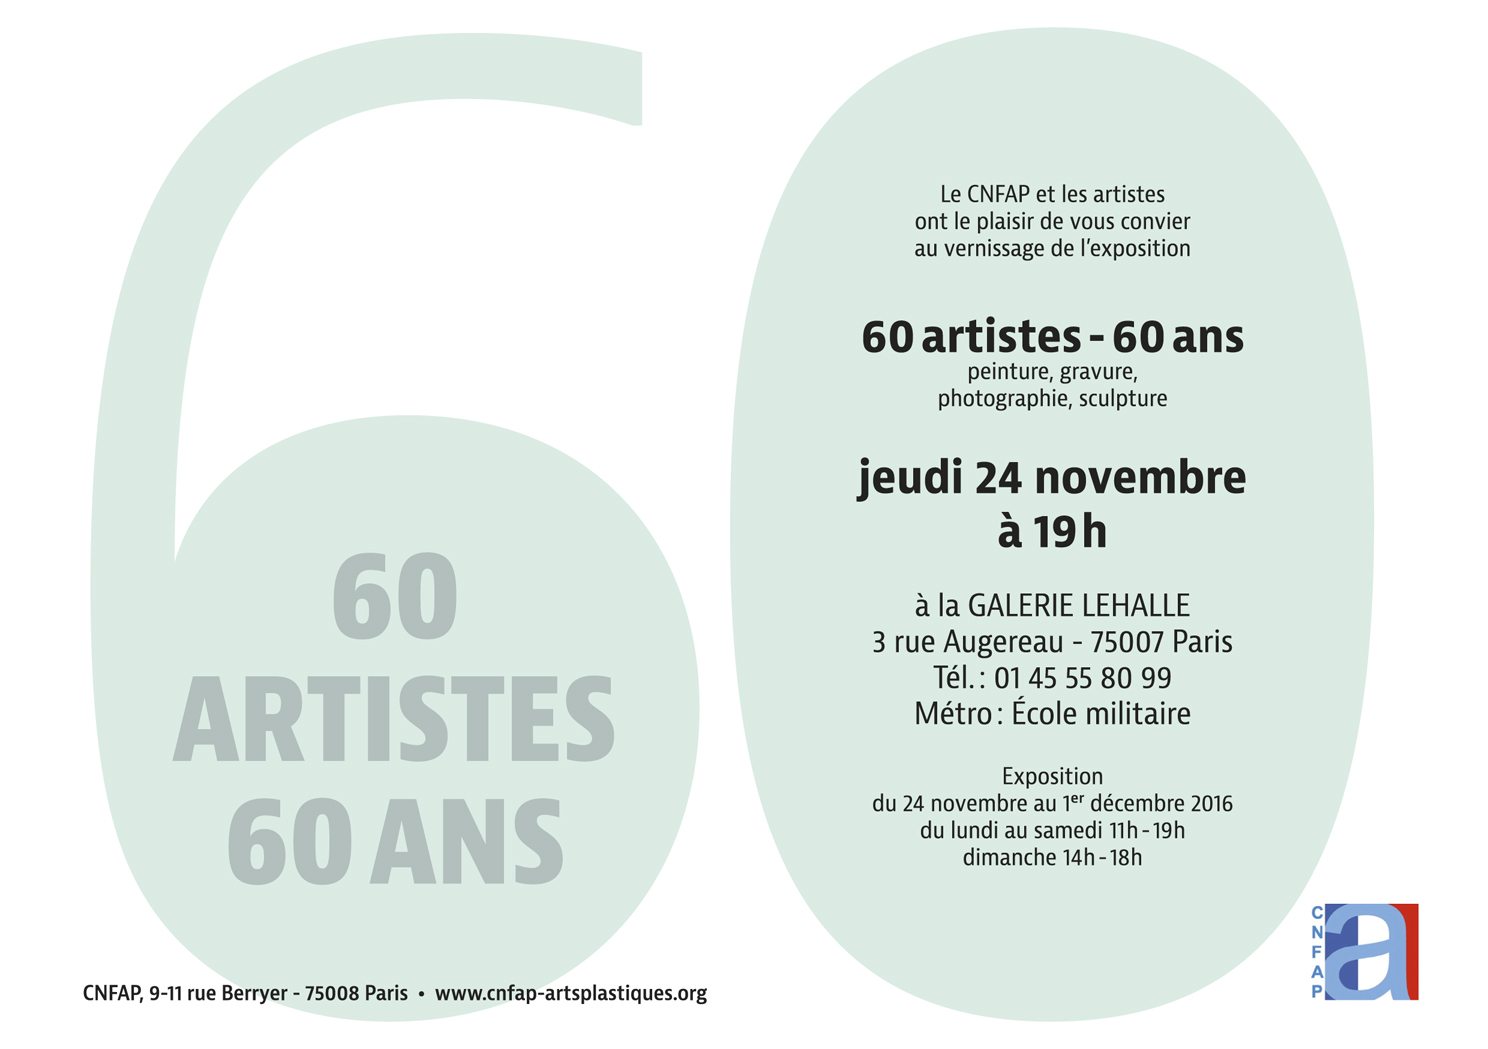 CNFAP Exposition "60artistes/60 ans"